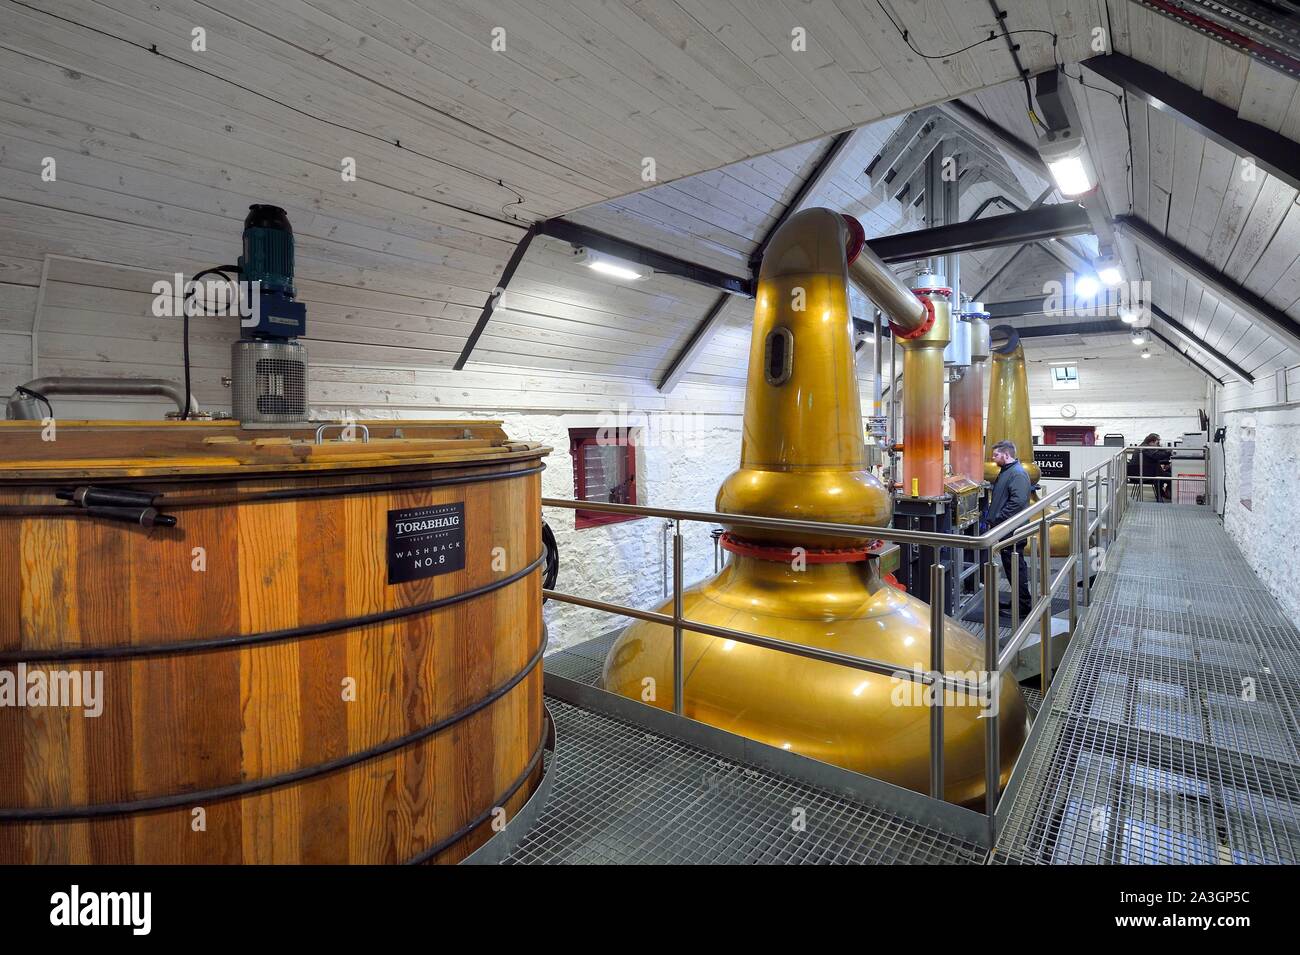 Vereinigtes Königreich, Schottland, Highlands, Hebriden, Isle of Skye, Teangue, washback Torabhaig Whisky Distillery, und waschen Sie die Destillation in Pot Stills Kupfer alambics Stockfoto